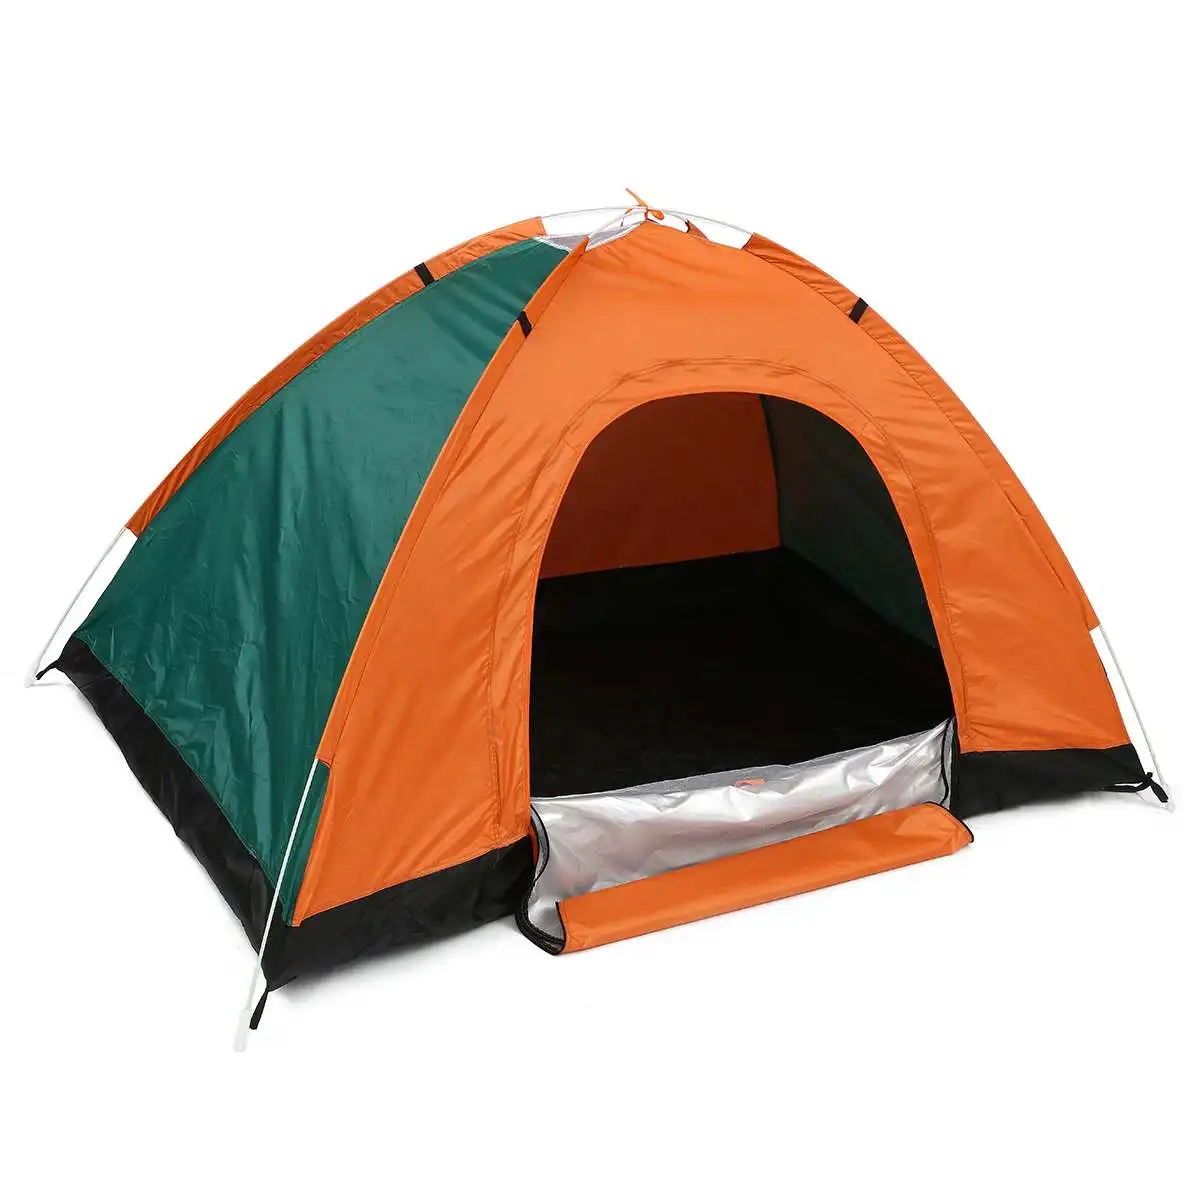 Открытый Палатки Портативный Кемпинг пляж палатка водонепроницаемый для солнечные укрытия, путешествия, Пешие прогулки большое пространство - Цвет: Оранжевый